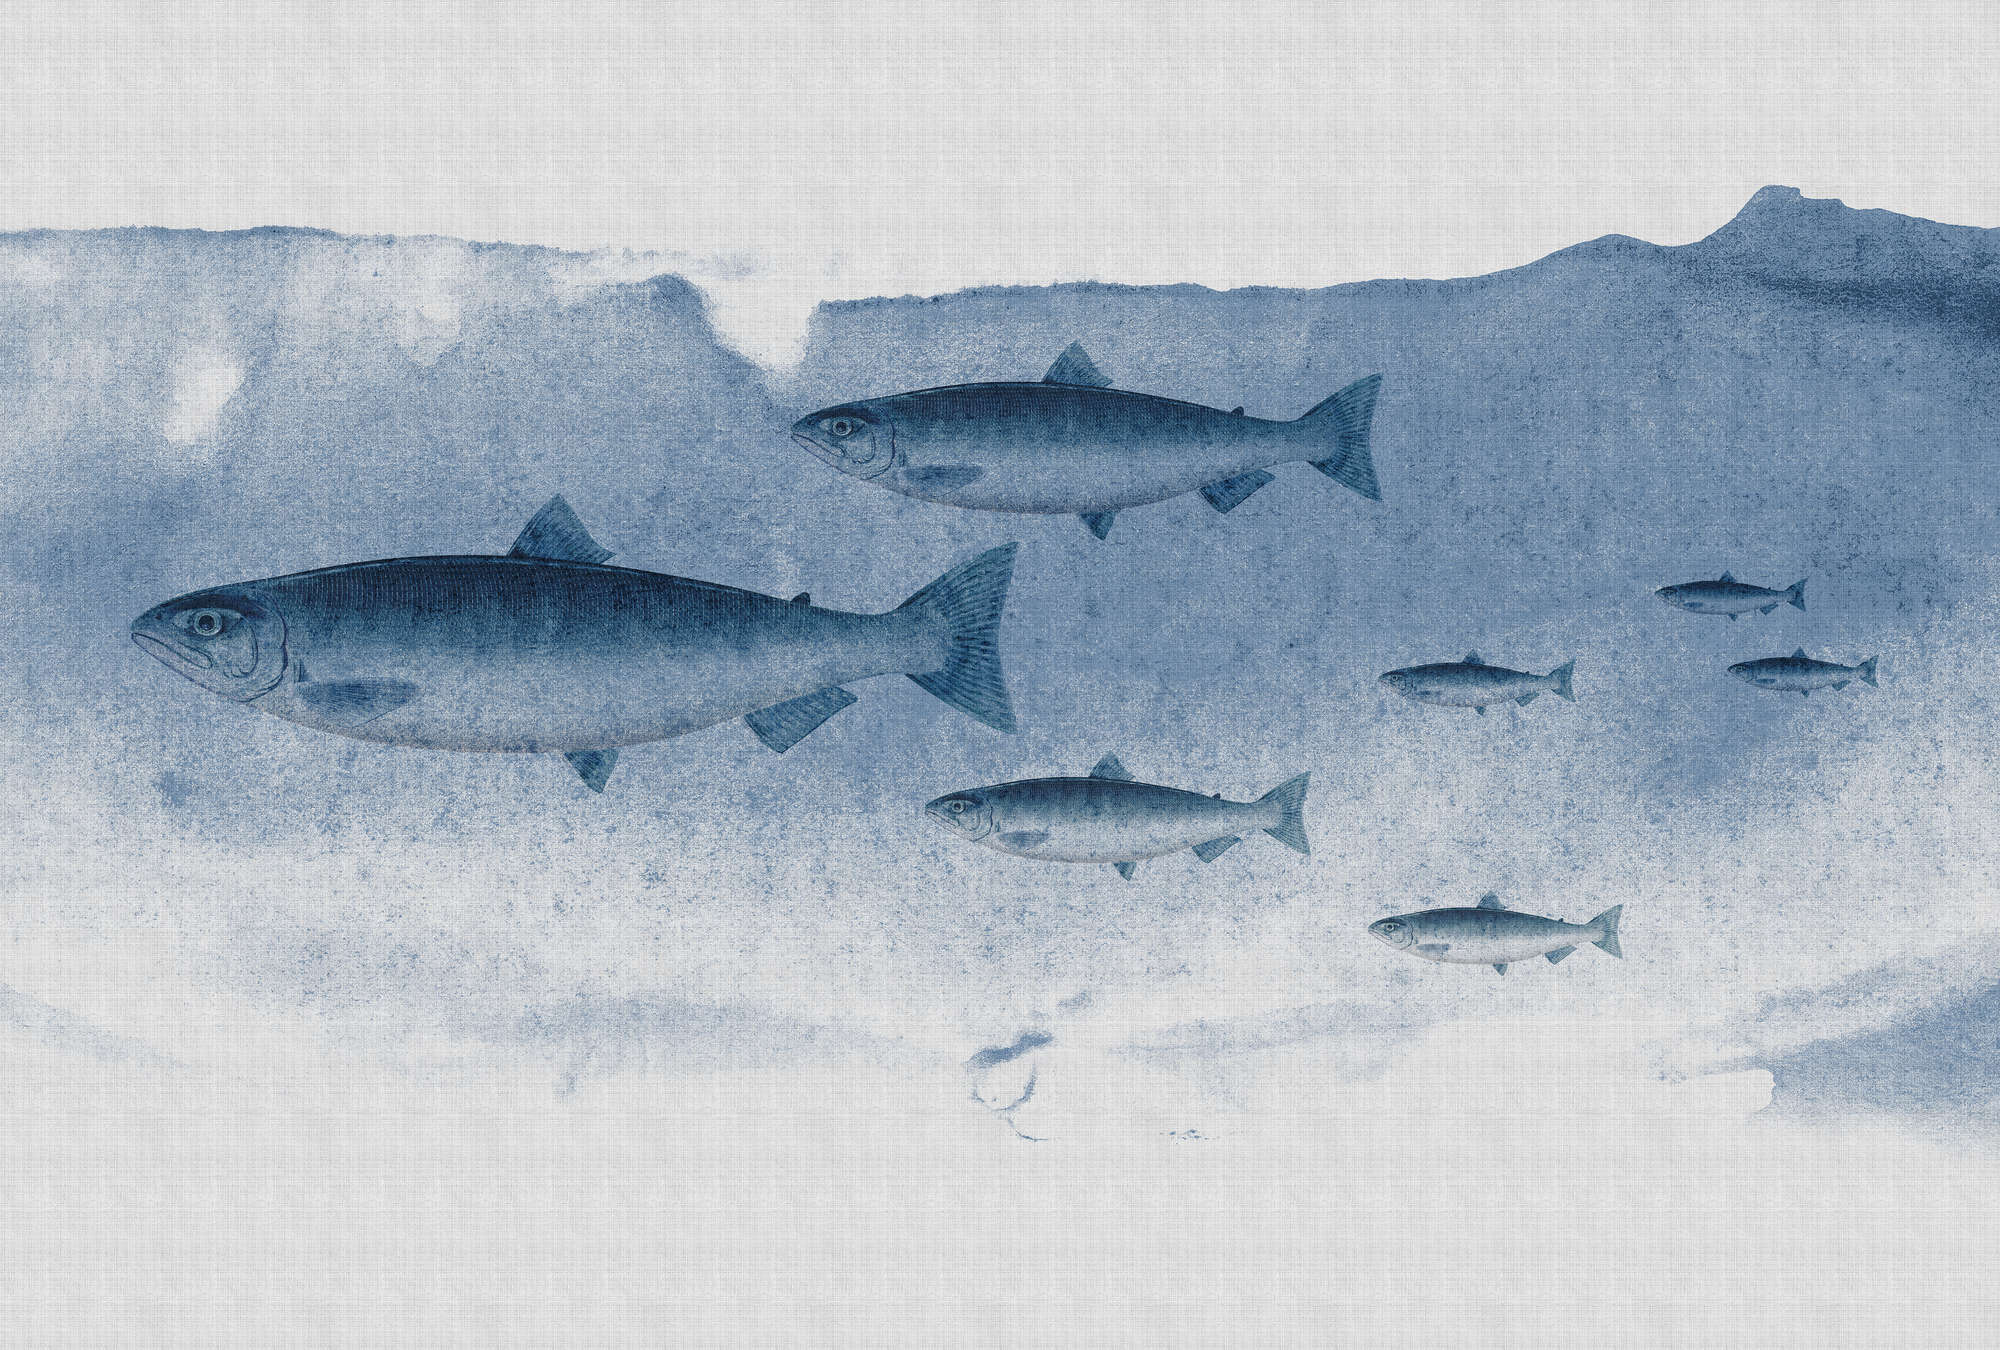             Into the blue 1 - Aquarelle de poissons en bleu comme papier peint à structure lin naturel - bleu, gris | structure intissé
        